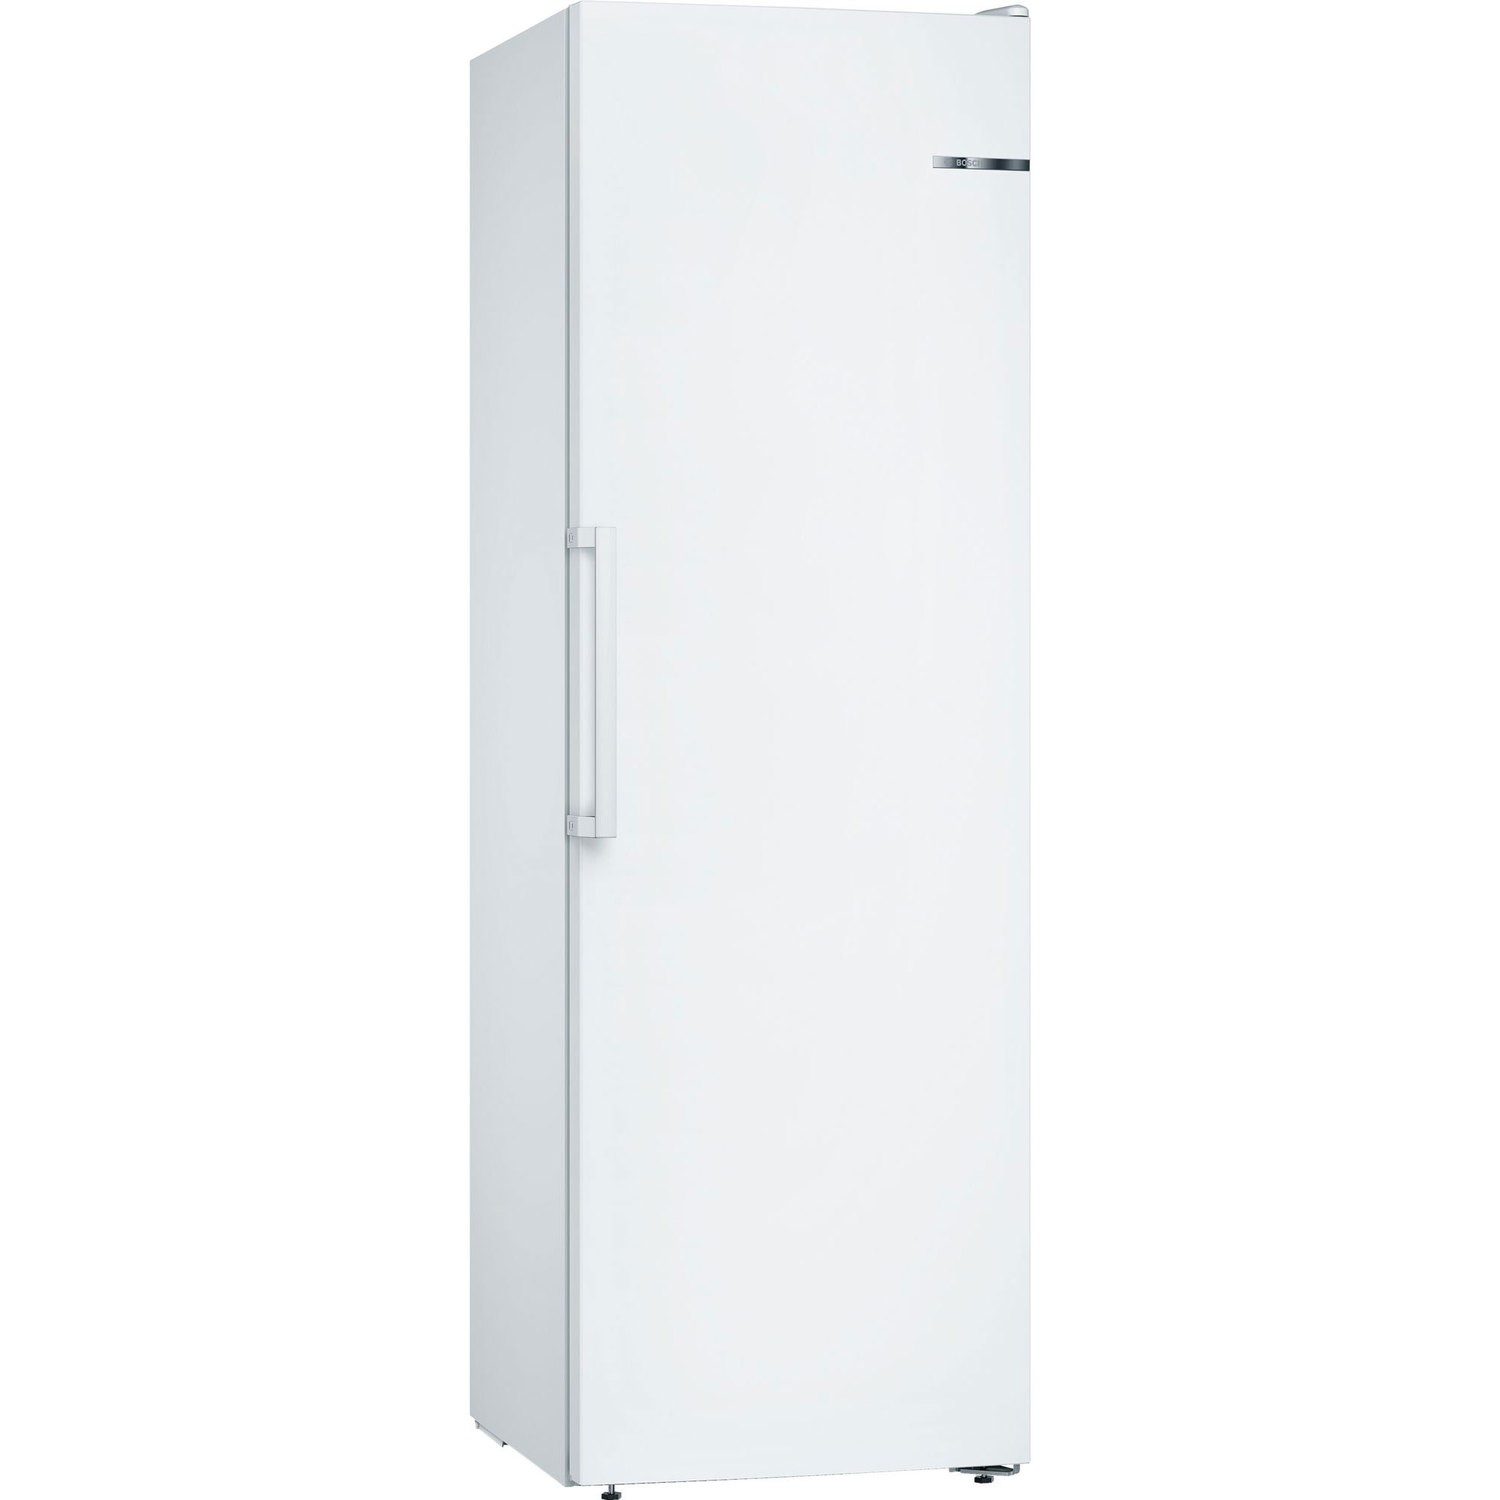 Bosch 242 Litre Tall Freestanding Freezer - White